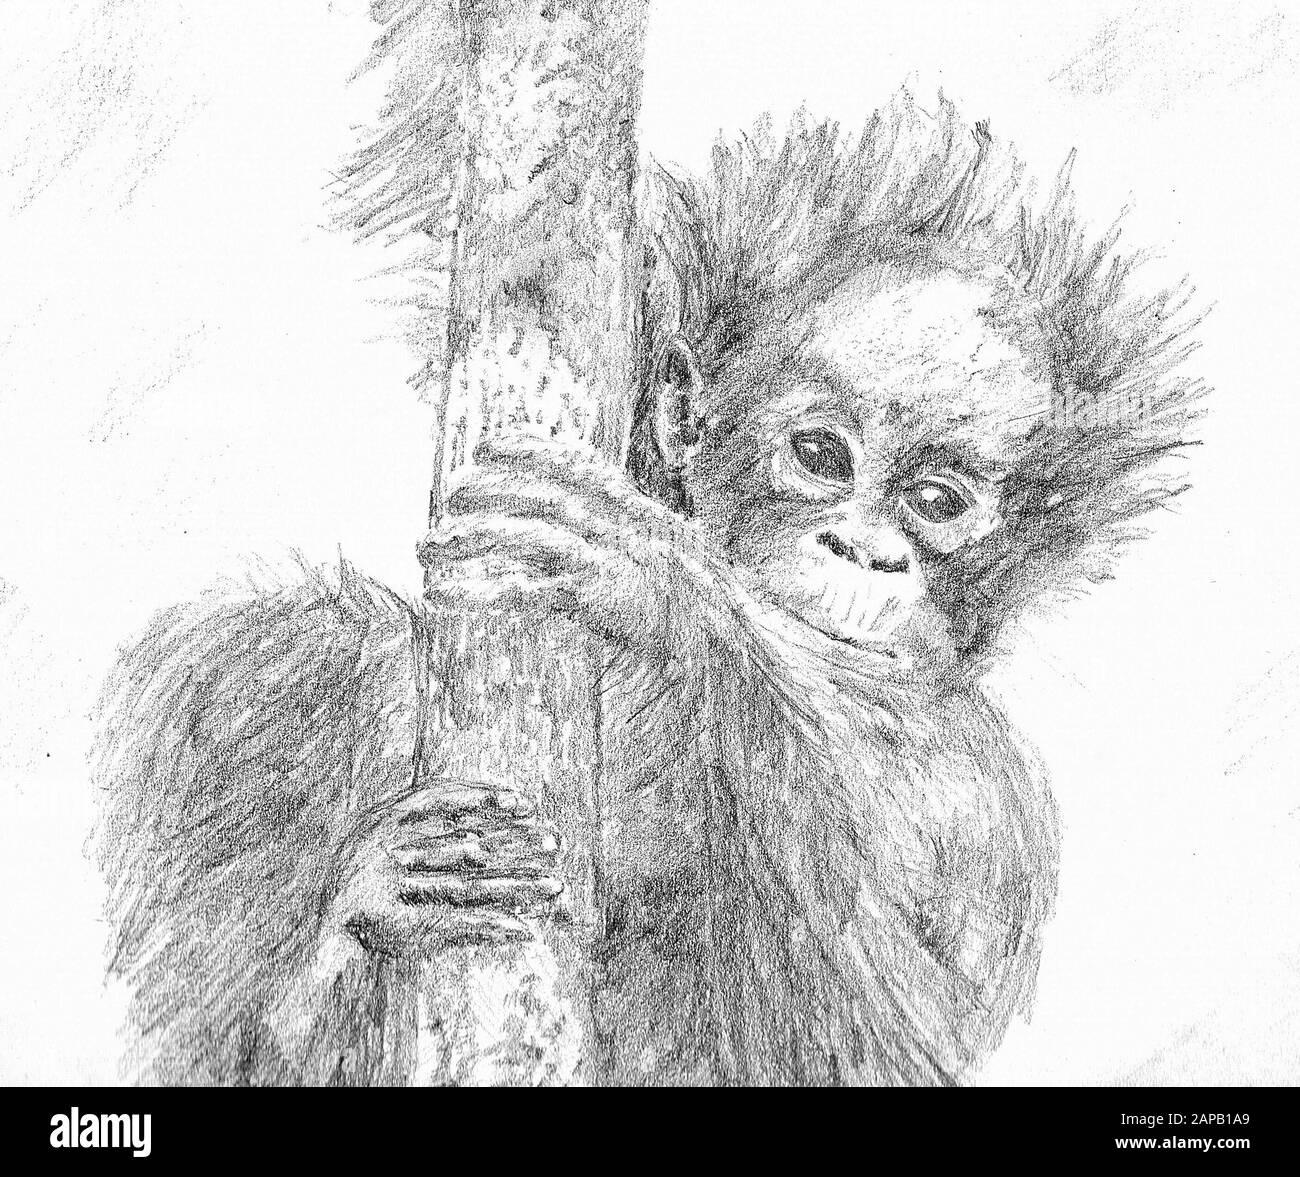 A sketch of a young orangutan Stock Photo